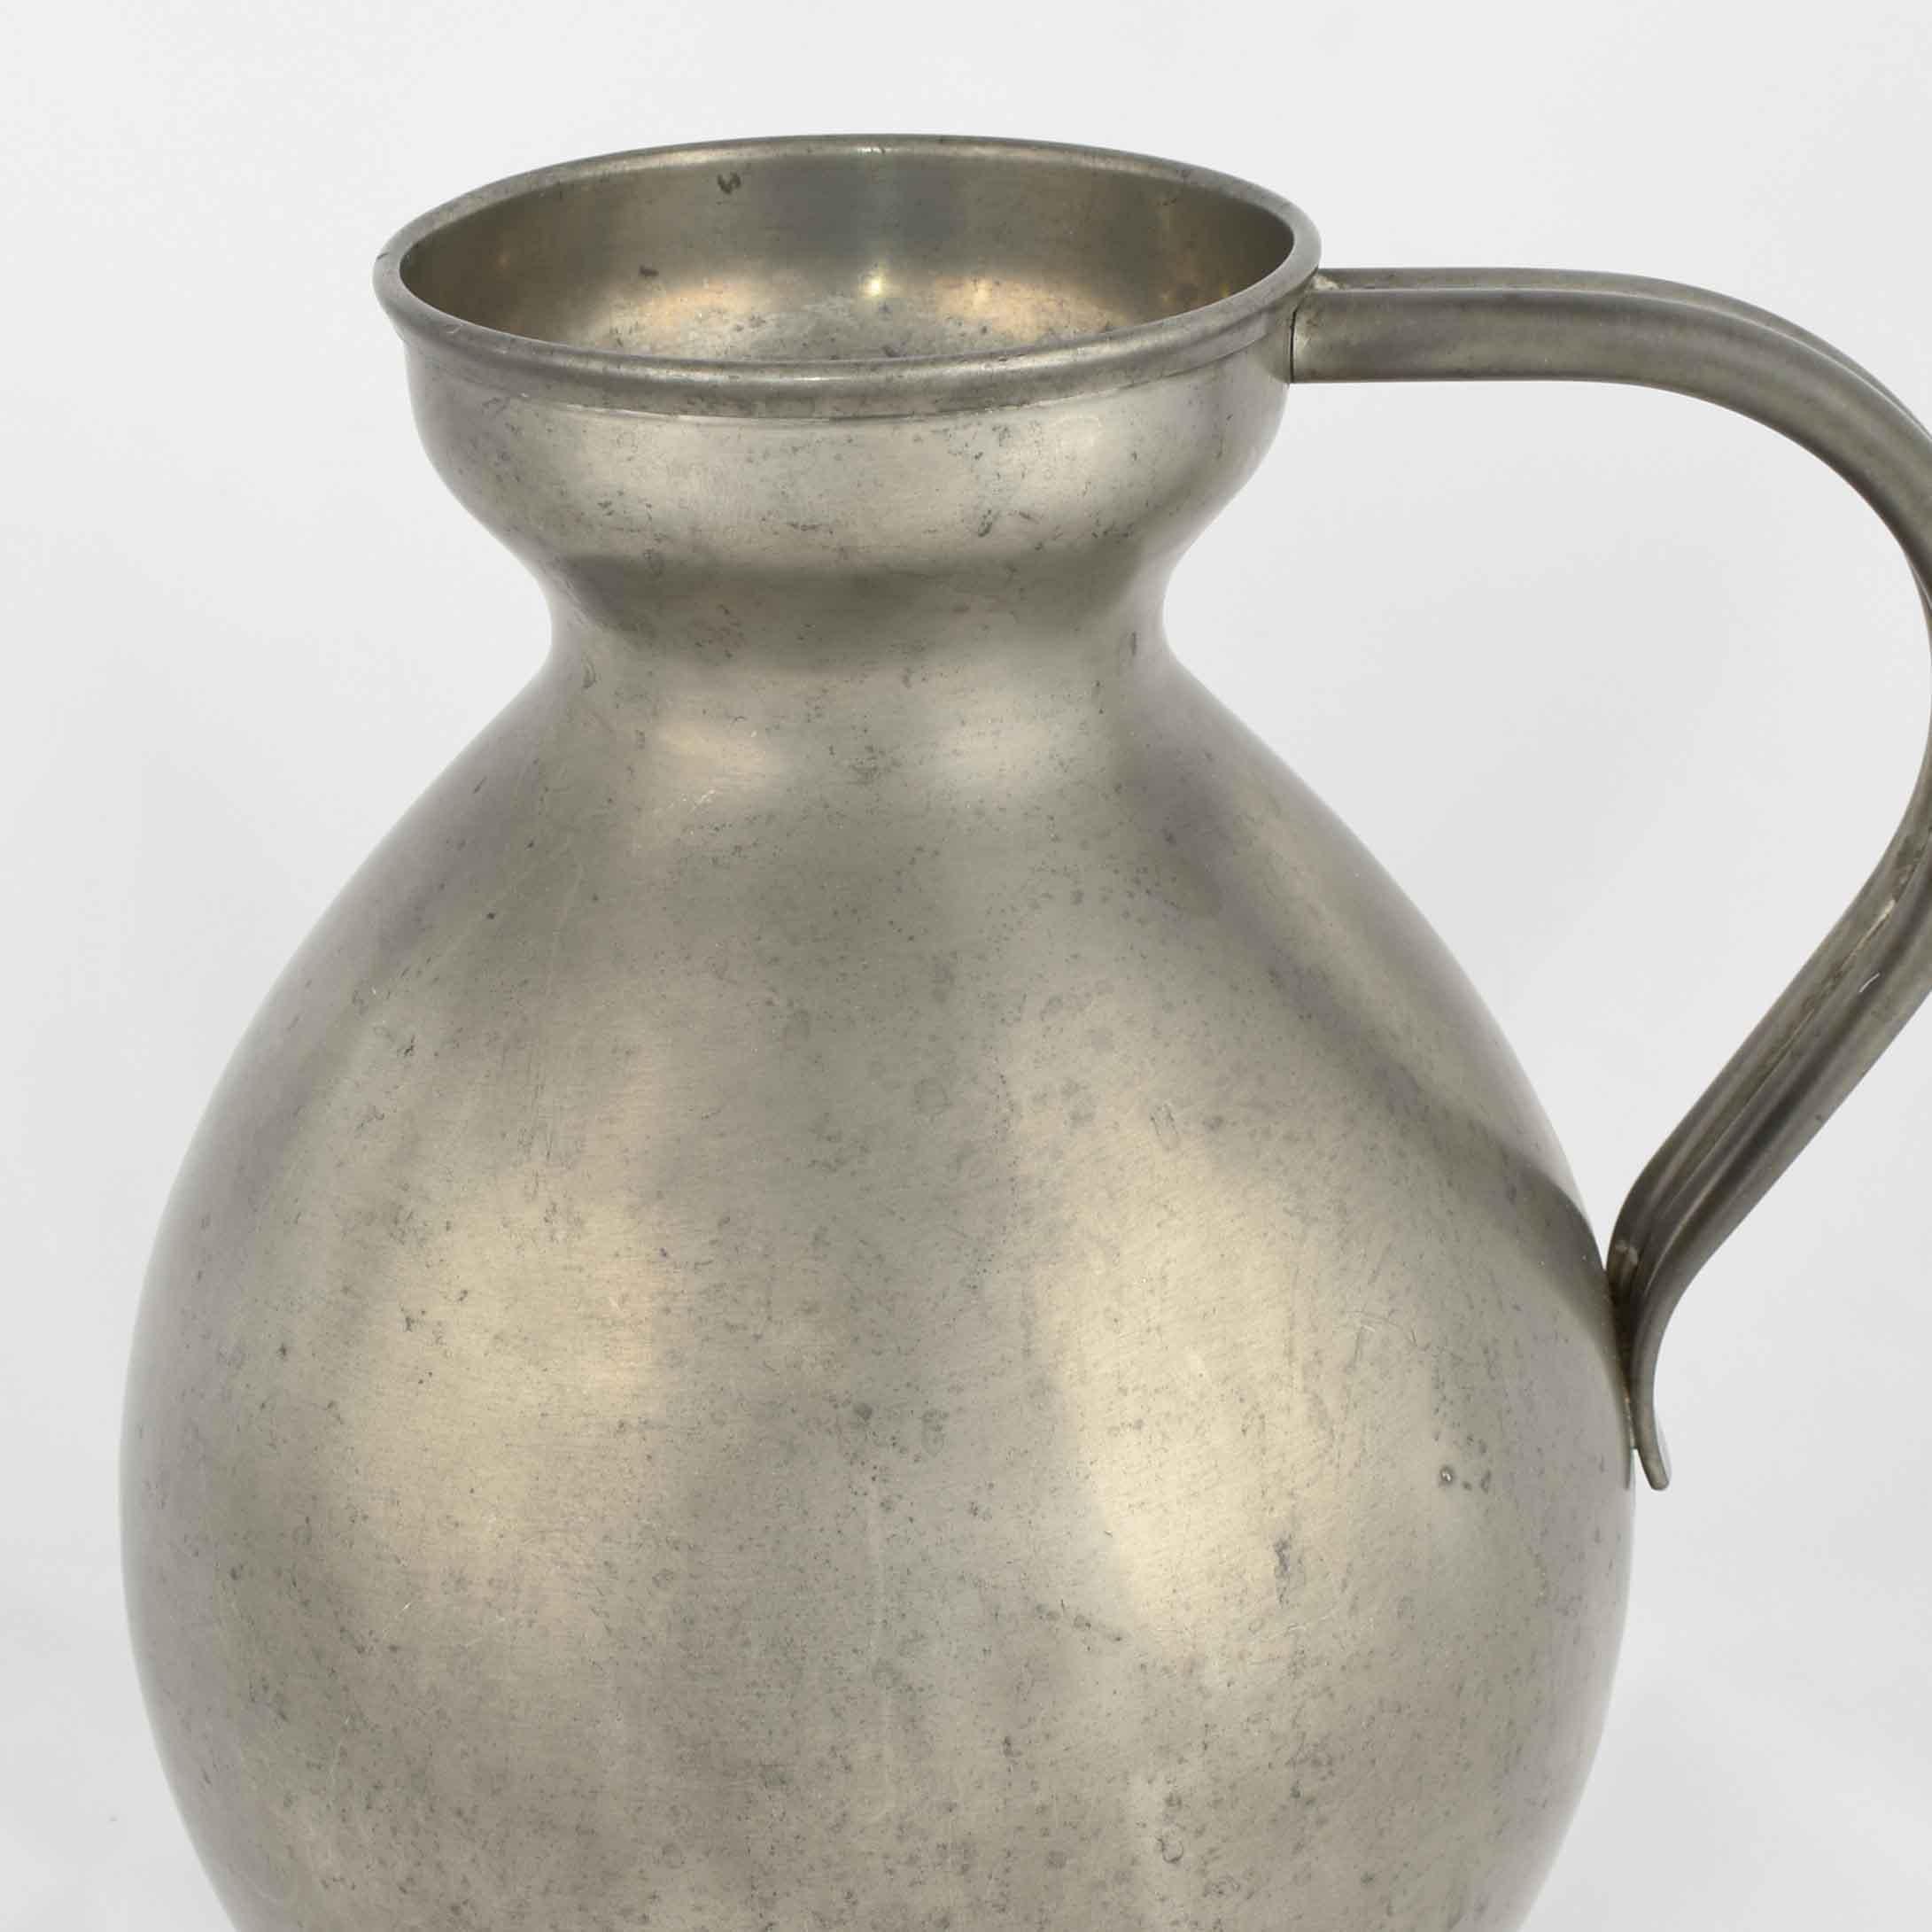 Le vase à anses est un objet décoratif original réalisé en Allemagne dans les années 1930. 

Travail du métal original.

Créé par Harald Buchrucker. 

Bon état : petits signes de vieillissement.

Bel objet en étain créé et réalisé par